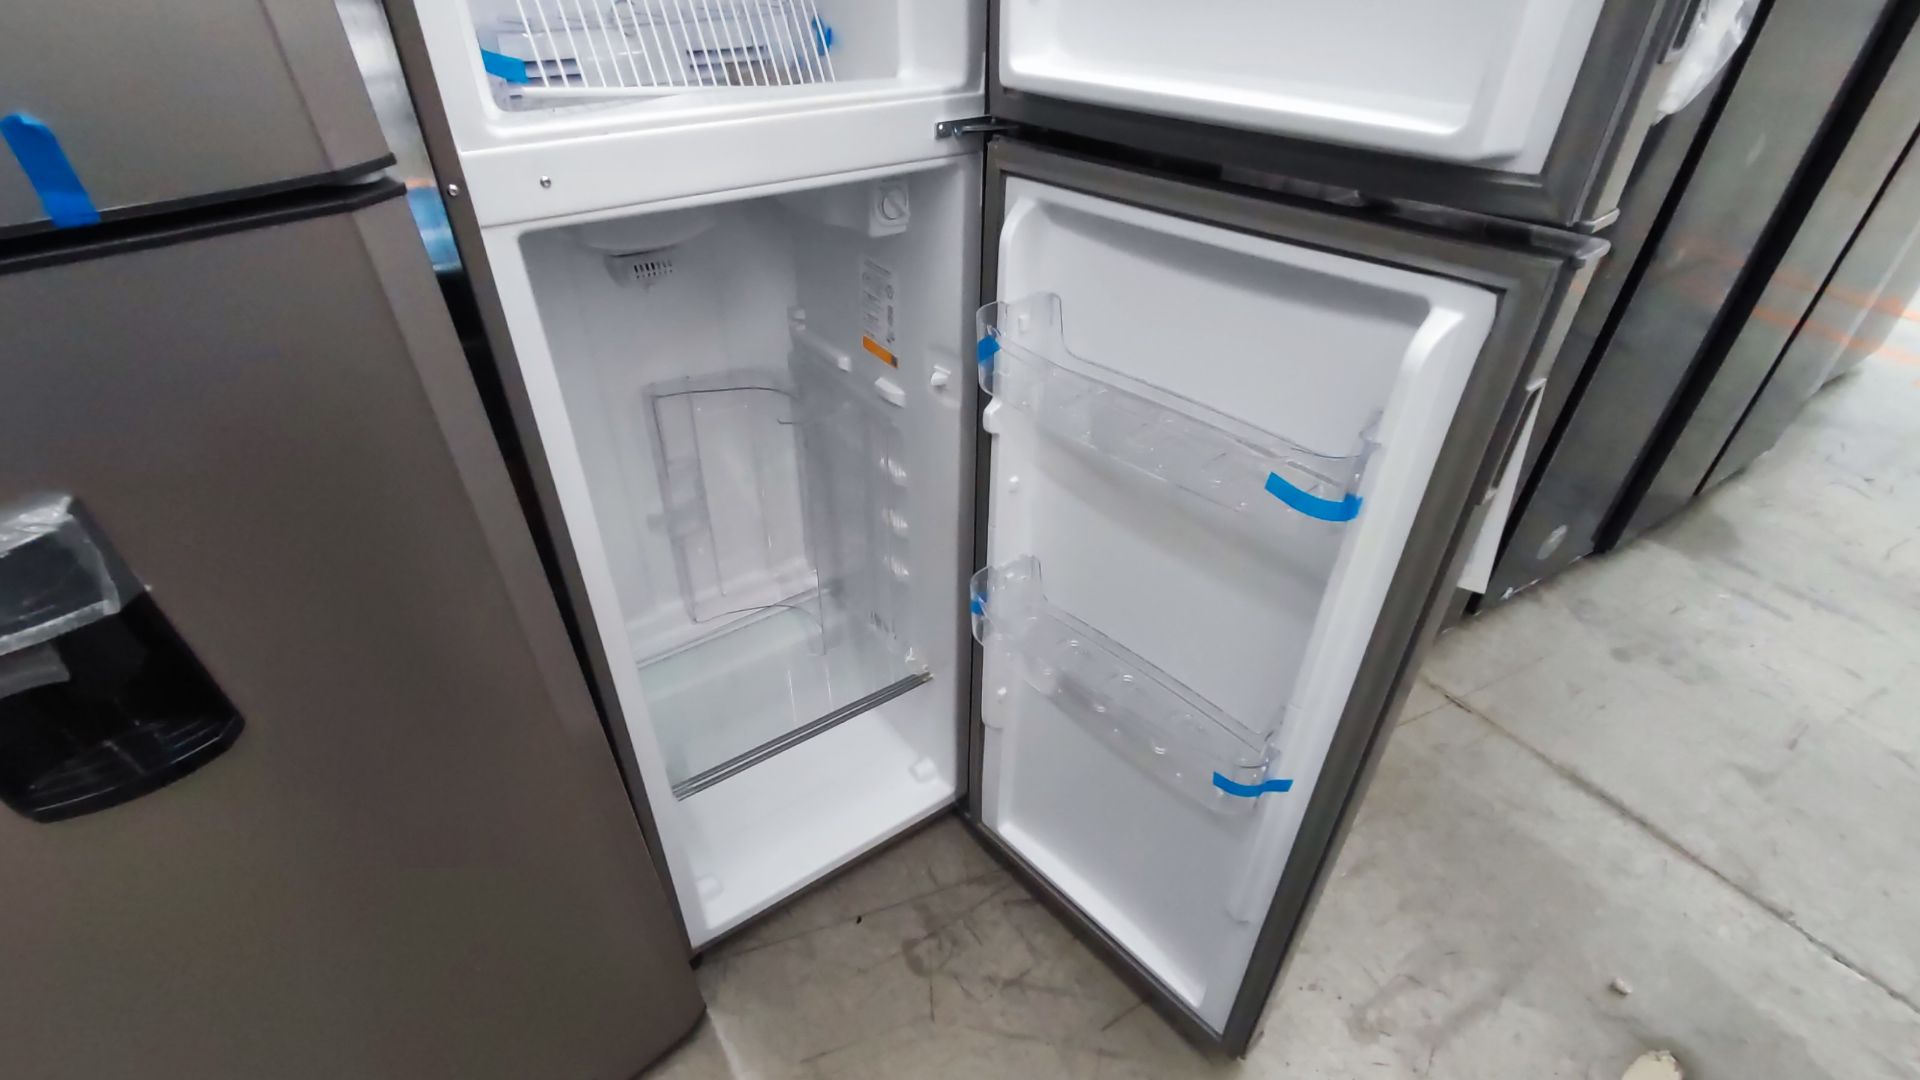 1 Refrigerador Marca Whirlpool, Modelo AT9007G03, Serie 1333816, Color Gris Detalles Estéticos. Fav - Image 10 of 12